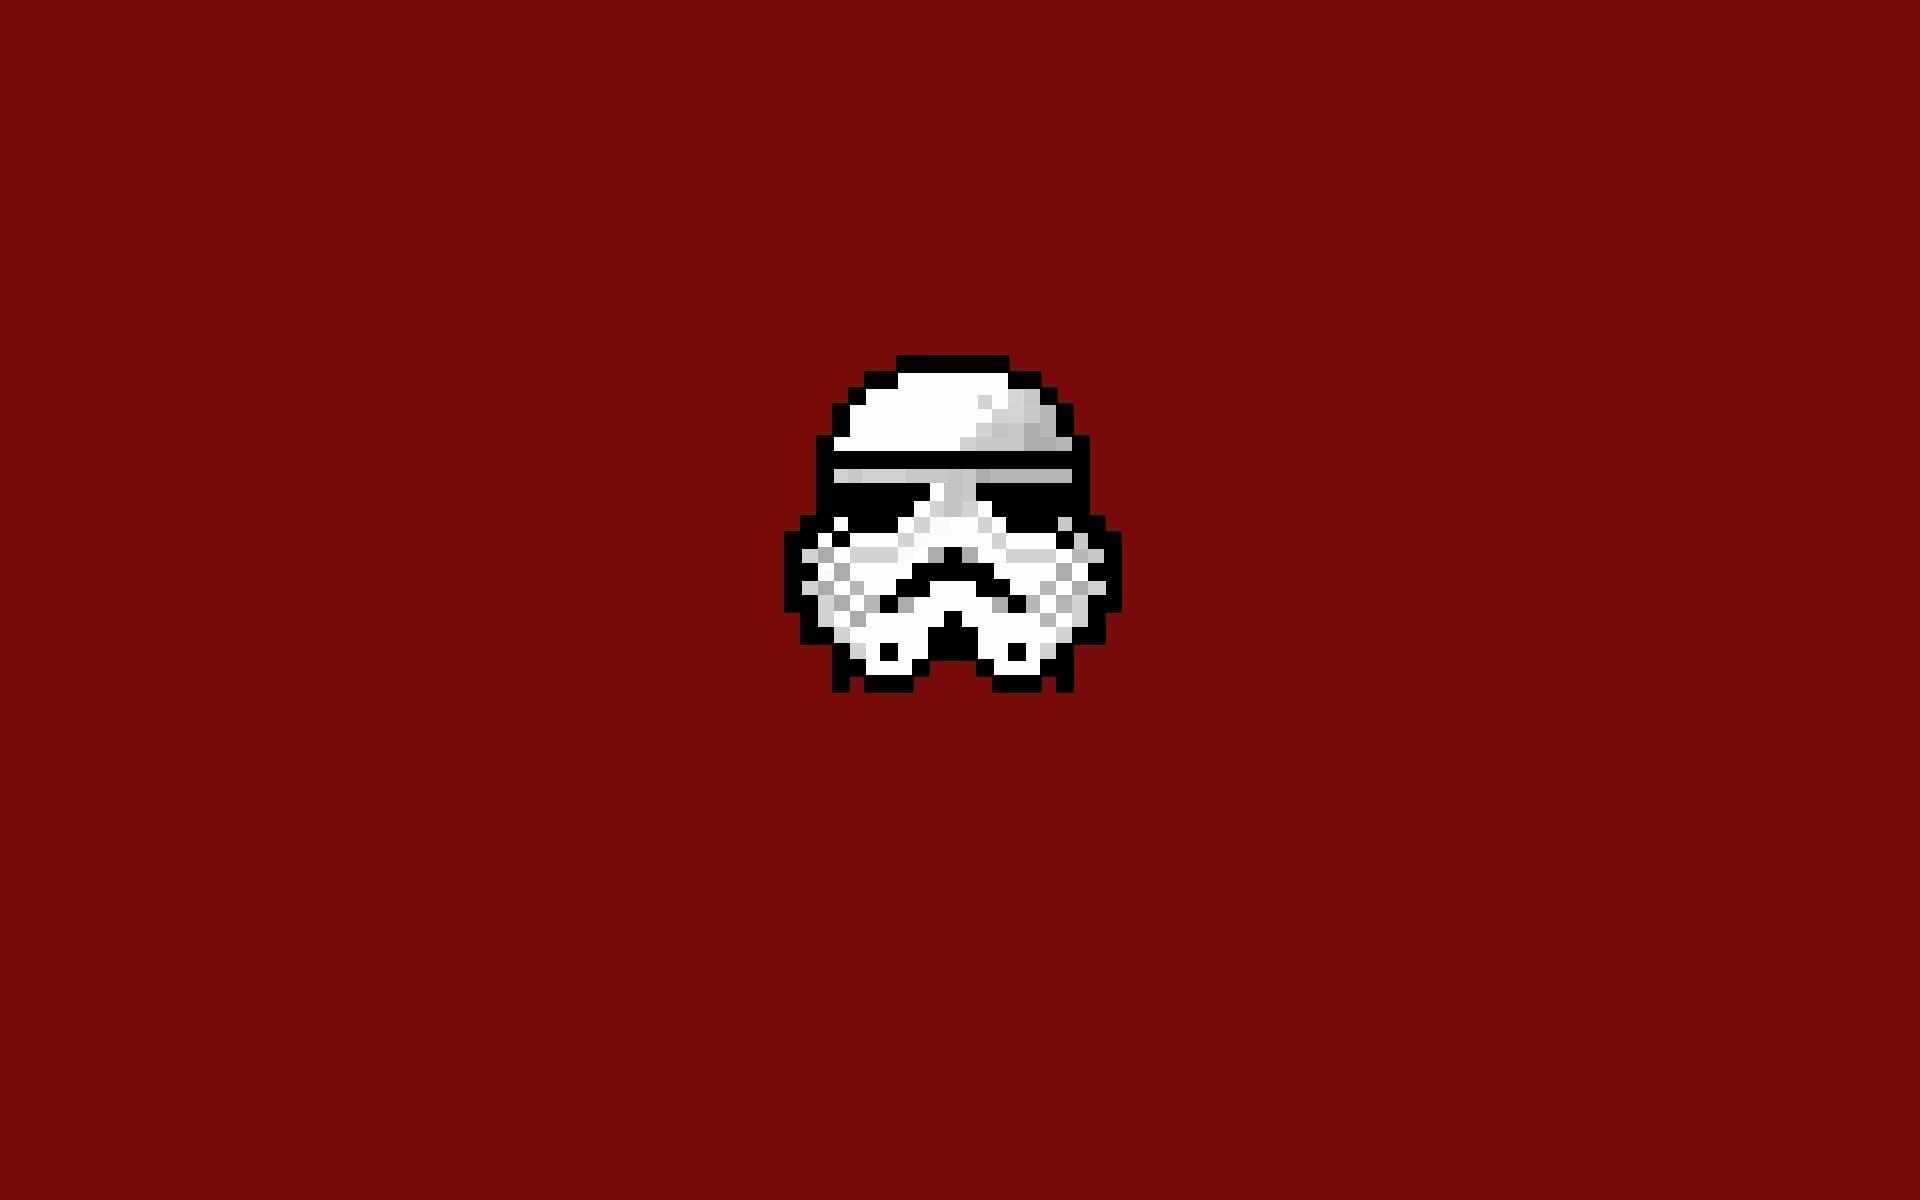 8-Bit Logo - Wallpaper : illustration, Star Wars, pixel art, minimalism, text